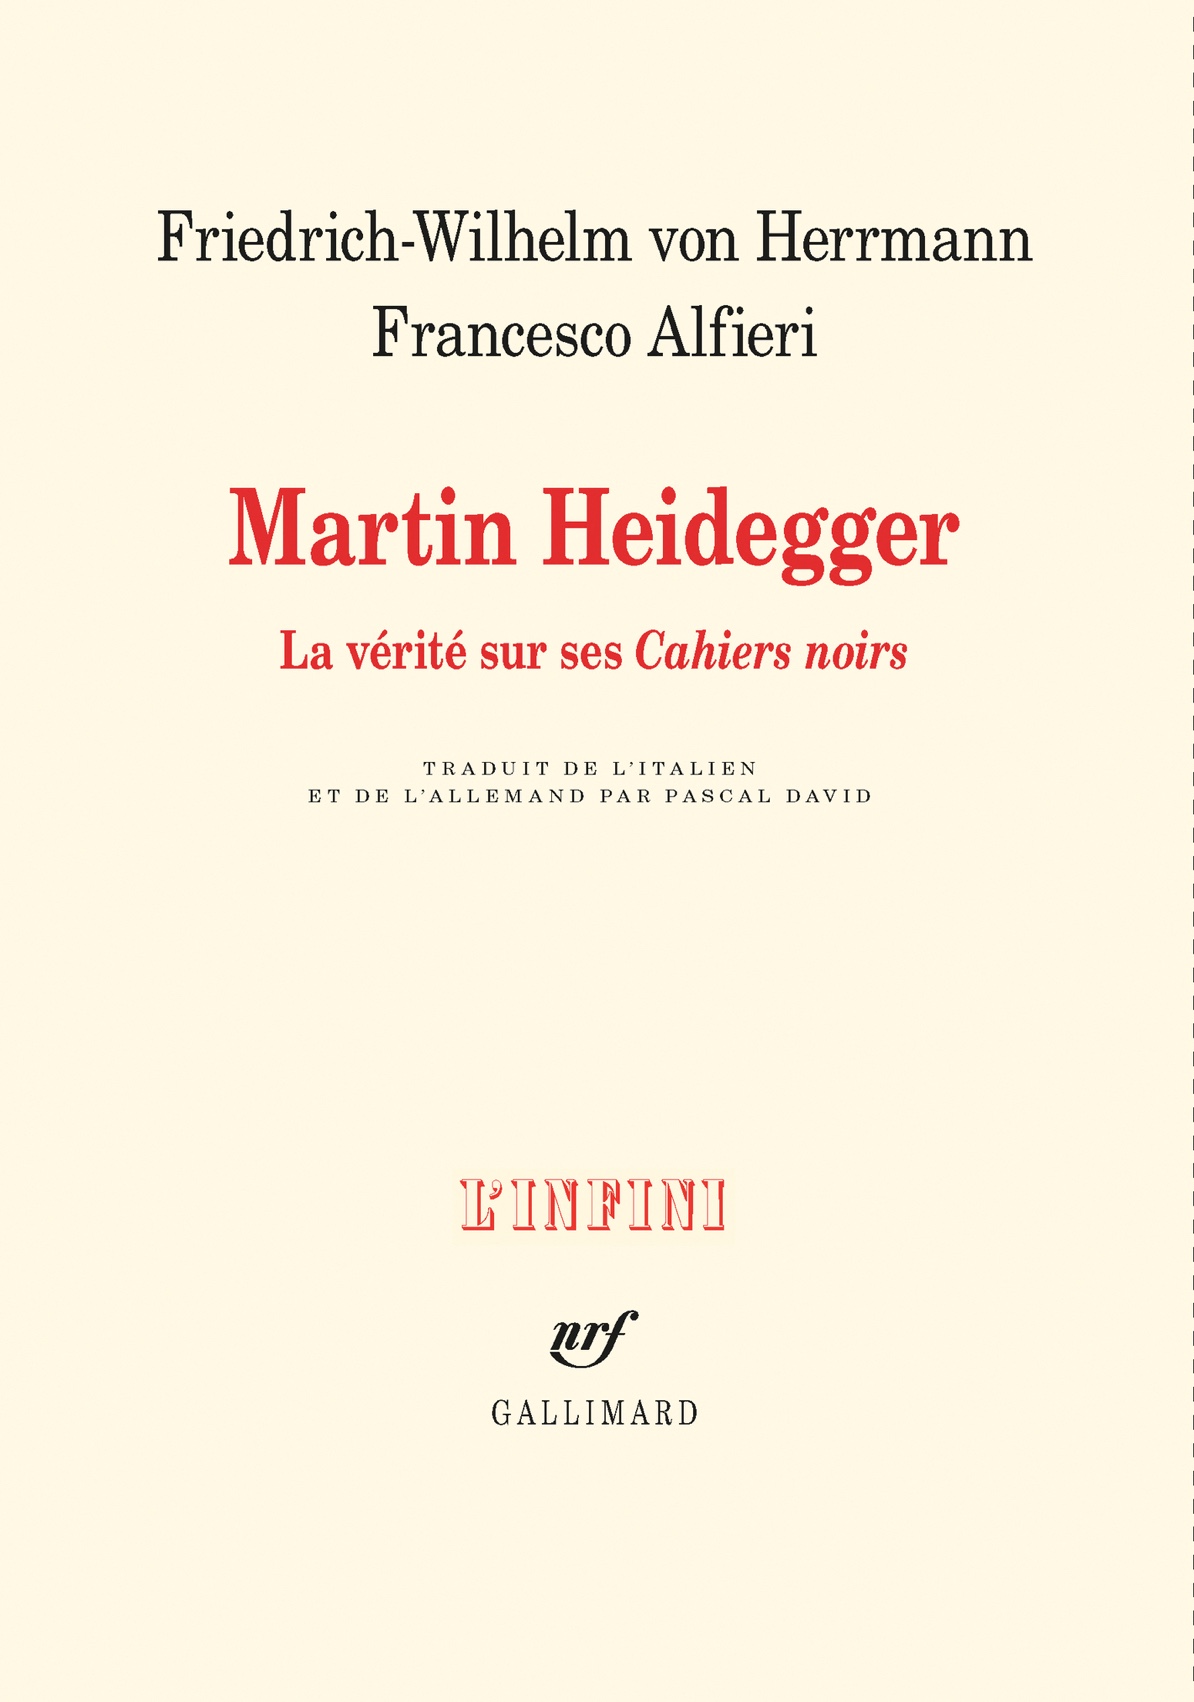 Martin Heidegger. La vérité sur ses Cahiers noirs